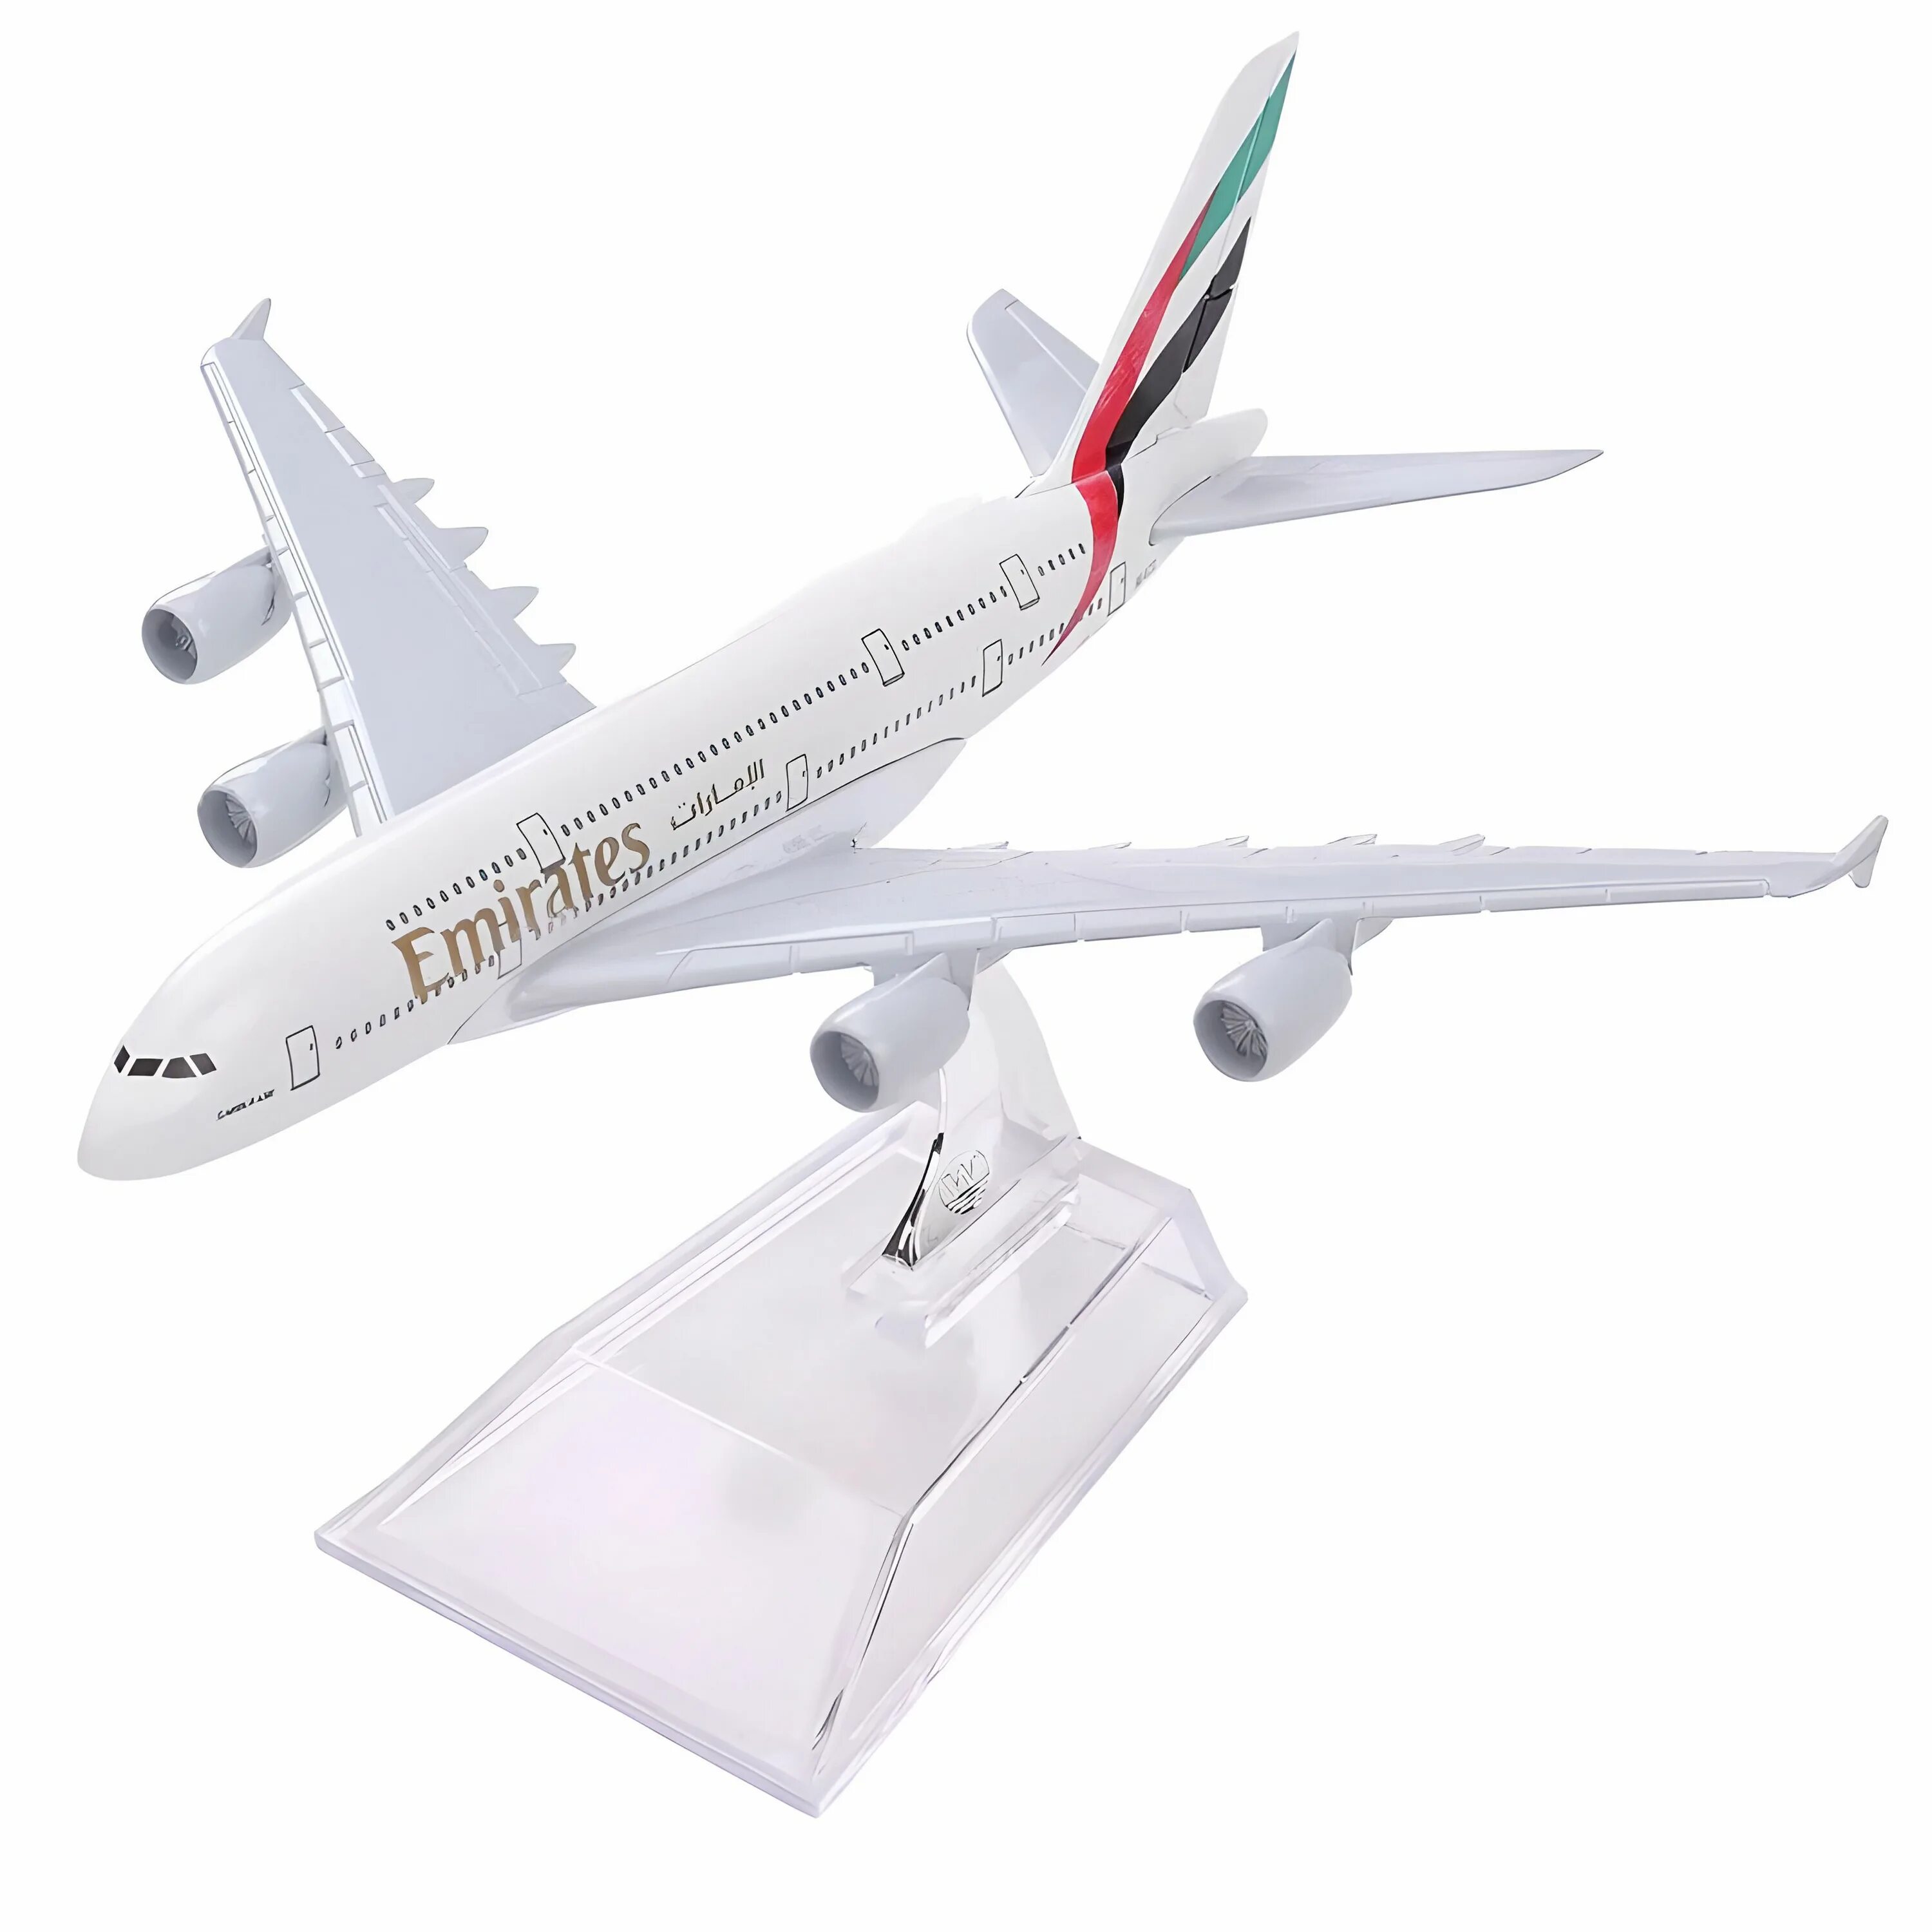 Самолёт Emirates а380 модель. Airbus a380 радиоуправляемый. Игрушка самолет Airbus a380. Revell Airbus a380-800 Lufthansa (04270) 1:144. Металлическая модель самолета